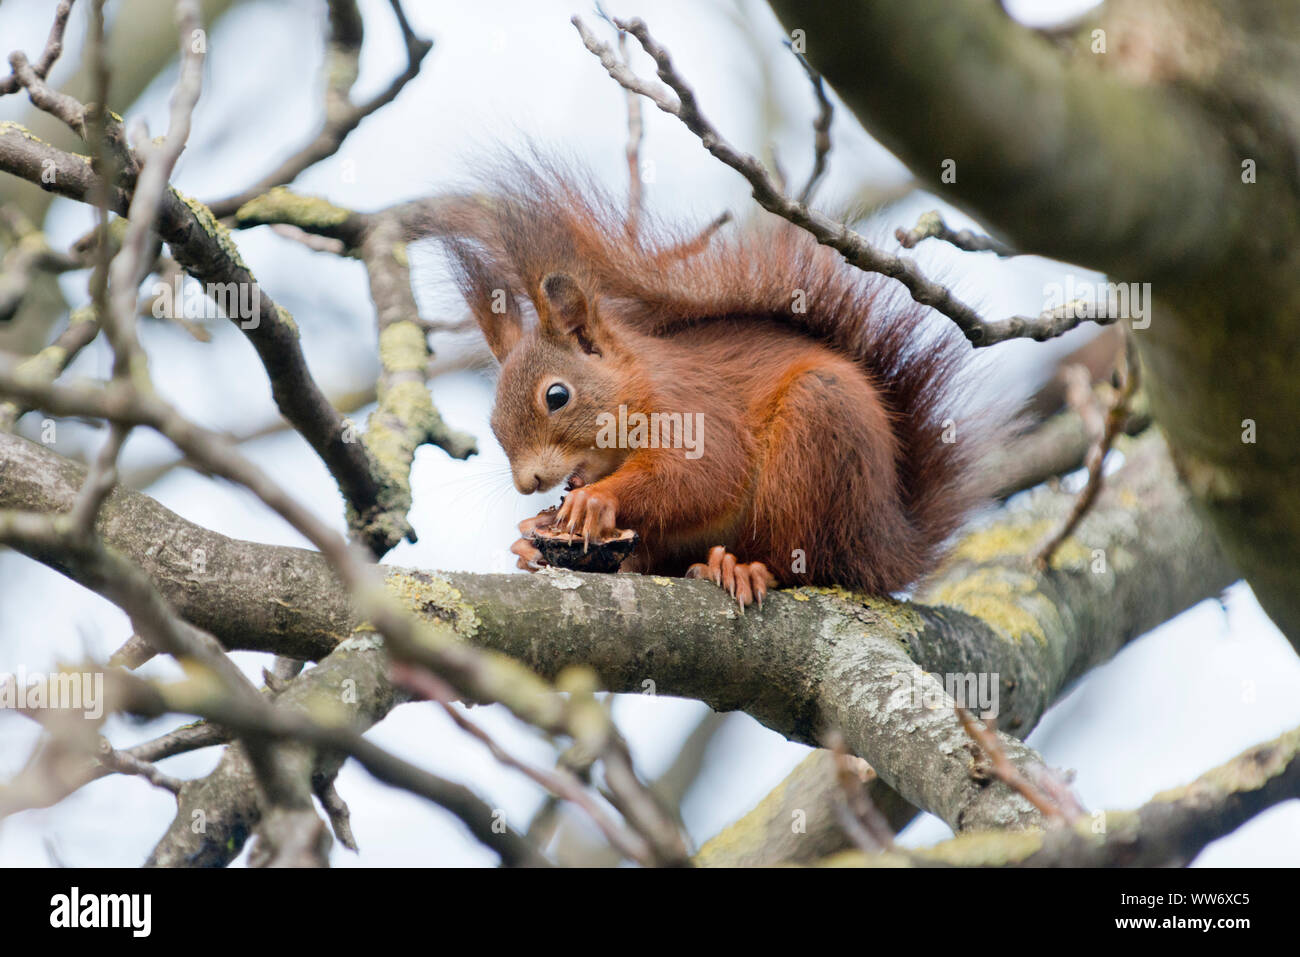 Squirrel, Sciurus vulgaris, on a nut tree, Stock Photo